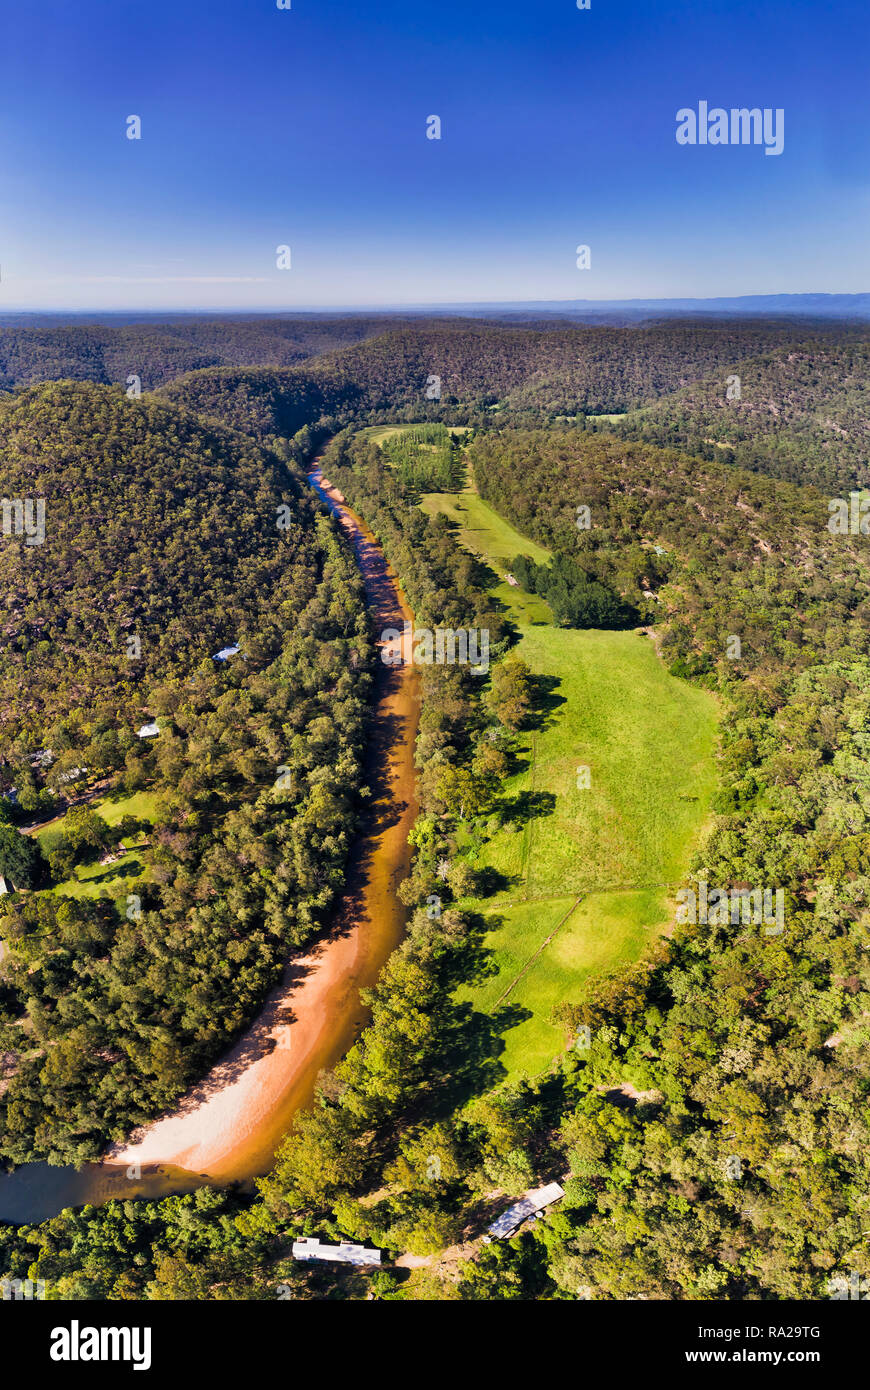 Toit de haut en bas vue sur rivière de Colo Colo autour de la rivière de la zone des hauteurs Gread Dividing Range en Australie dans le cadre de panorama vertical bl Banque D'Images